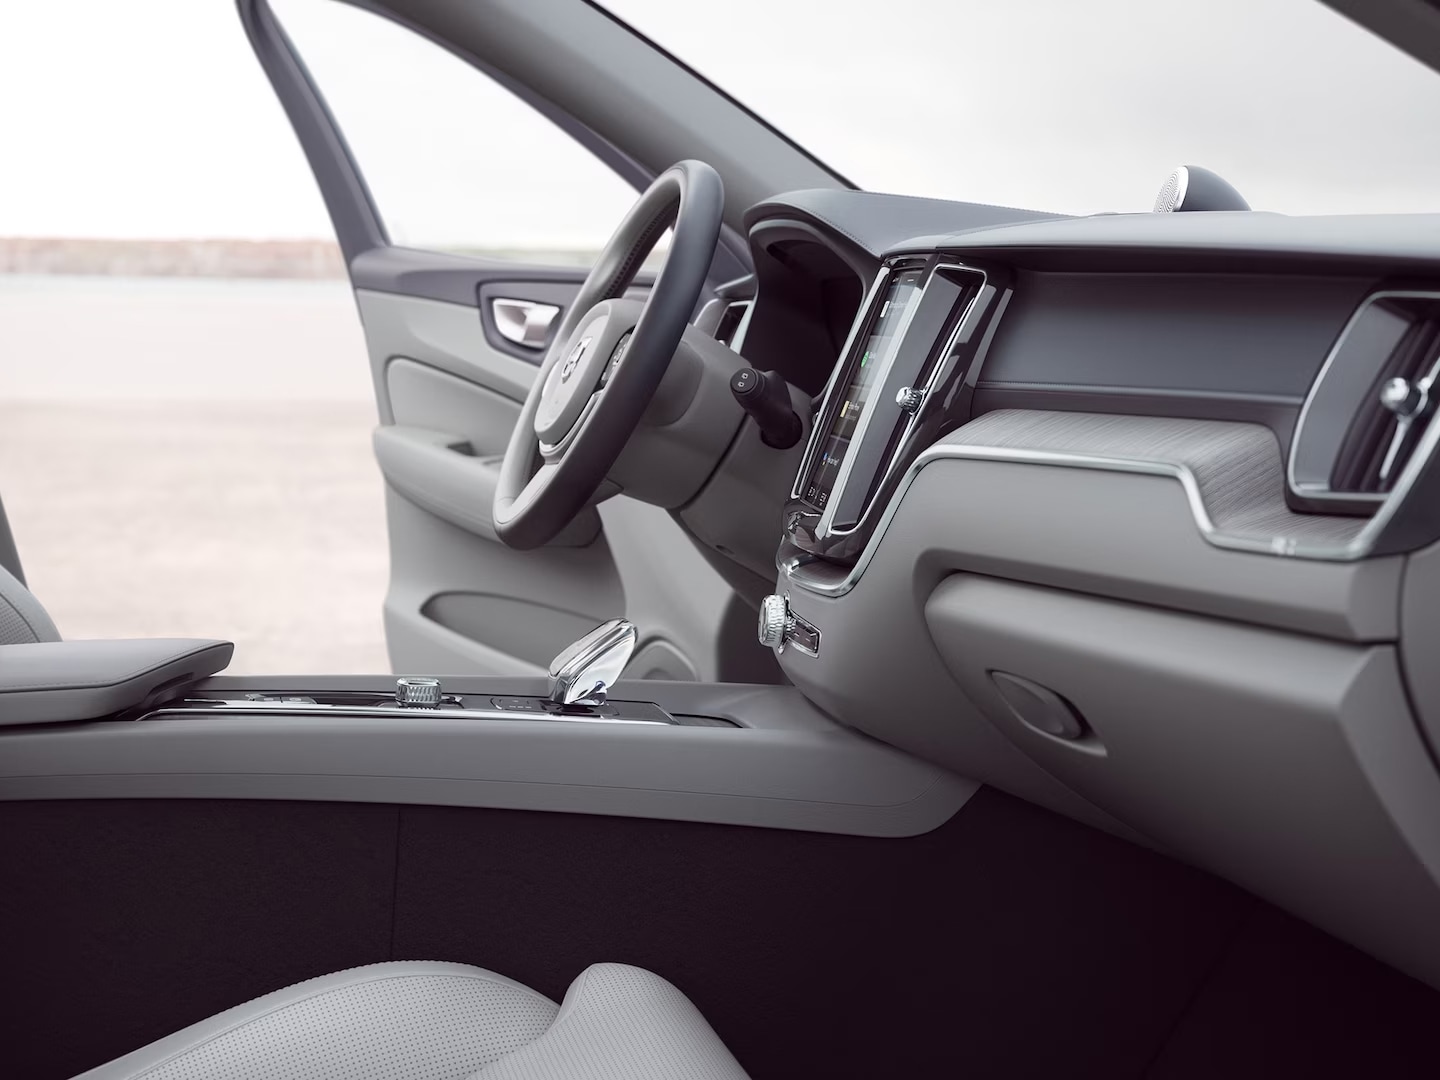 Front interior of Volvo XC60 with driver door open.